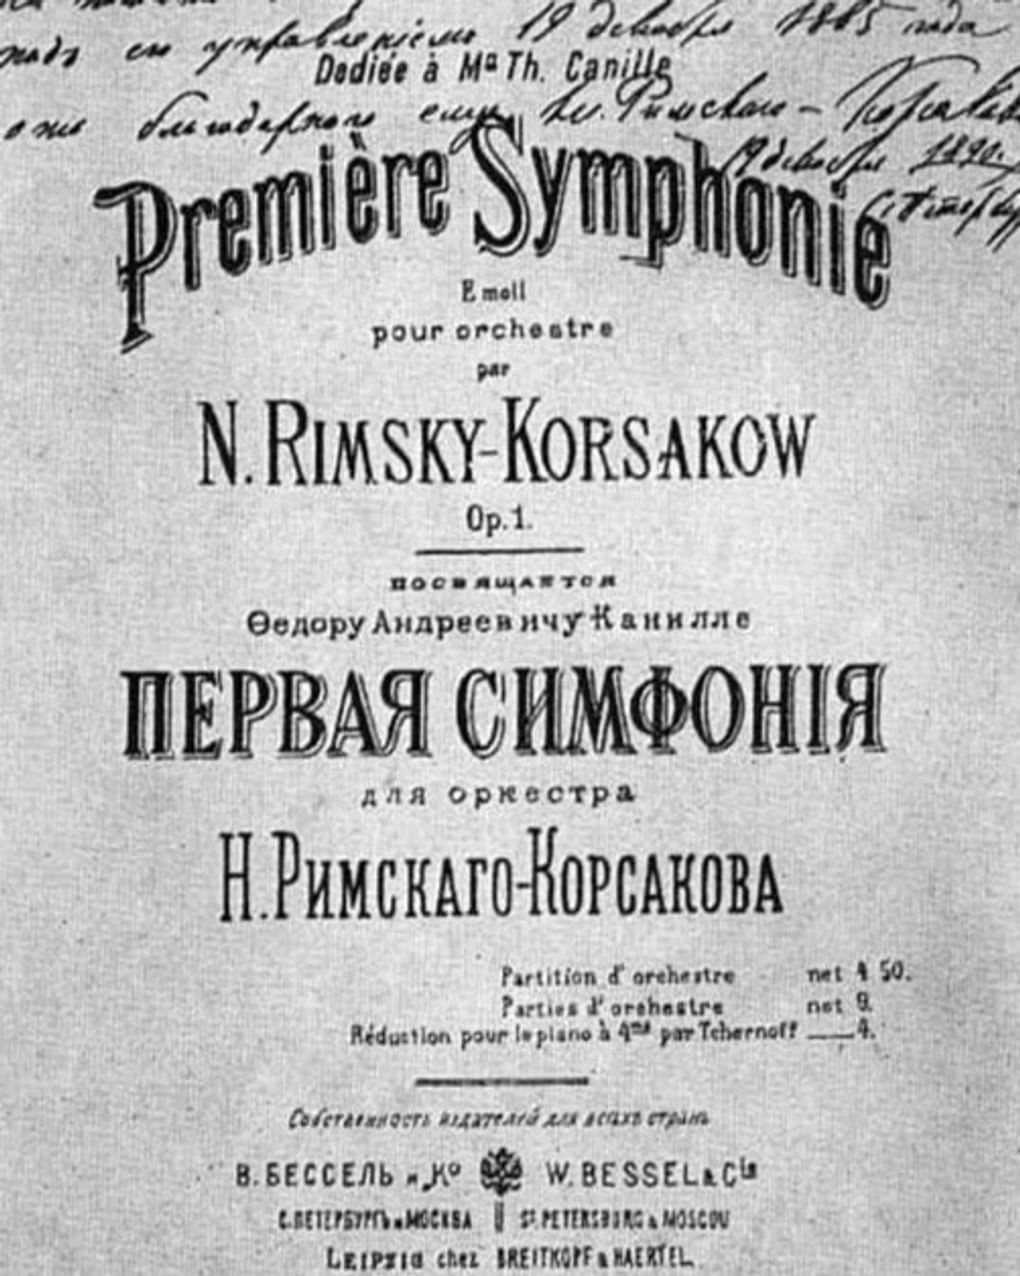 Римский-Корсаков Николай Андреевич — биография композитора, личная жизнь,  фото